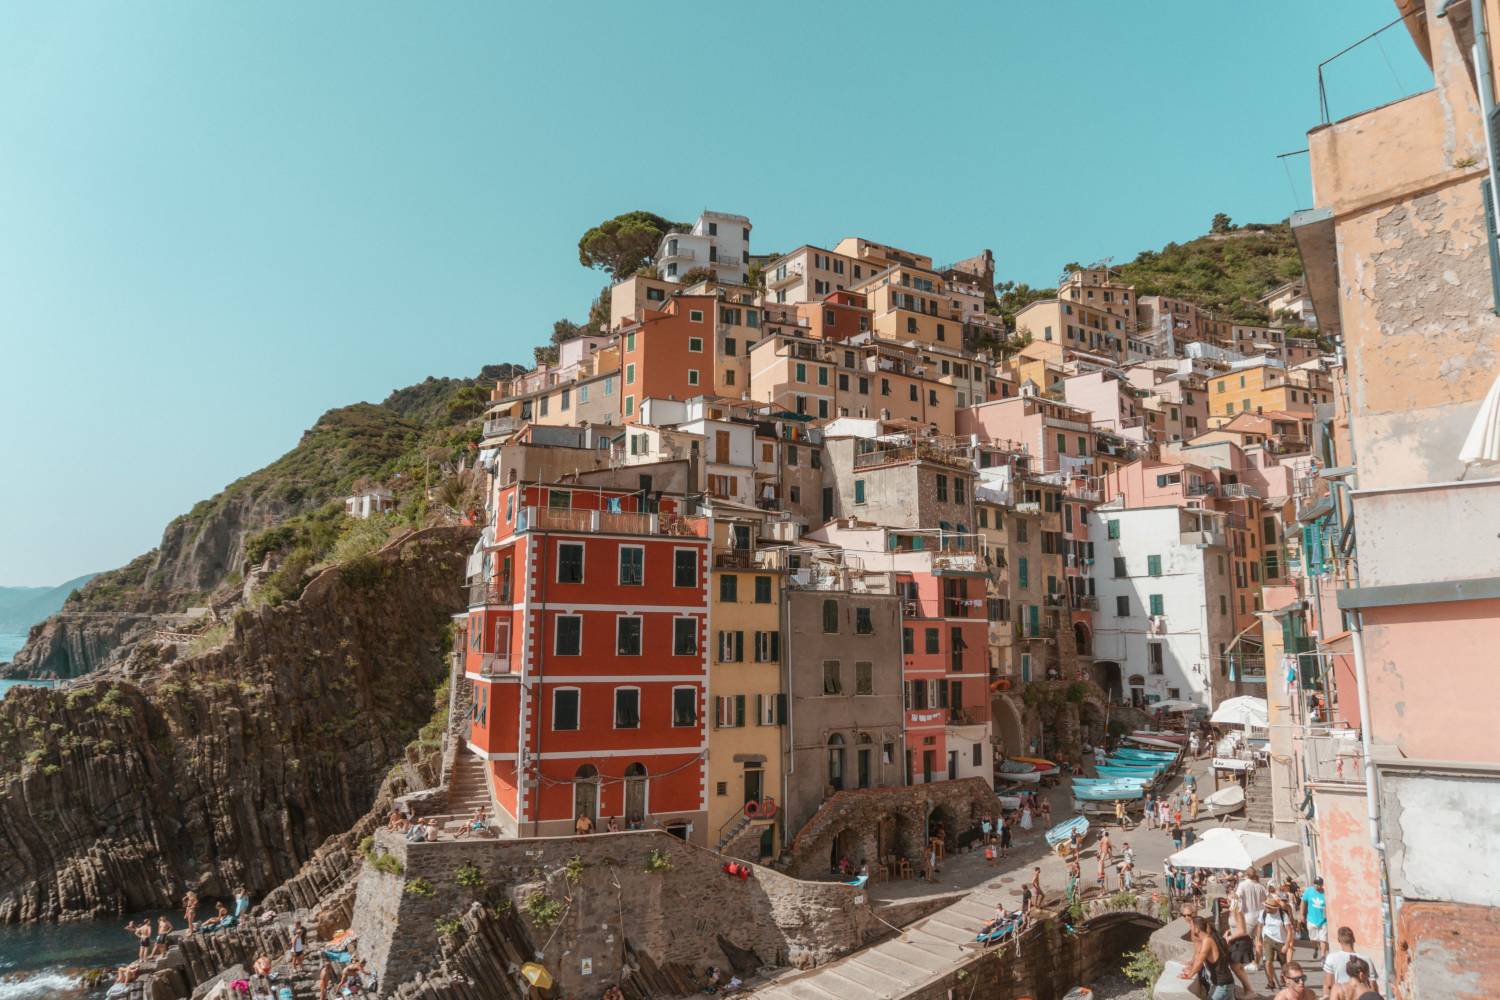 The Ultimate Cinque Terre Italy Guide - Amy Marietta